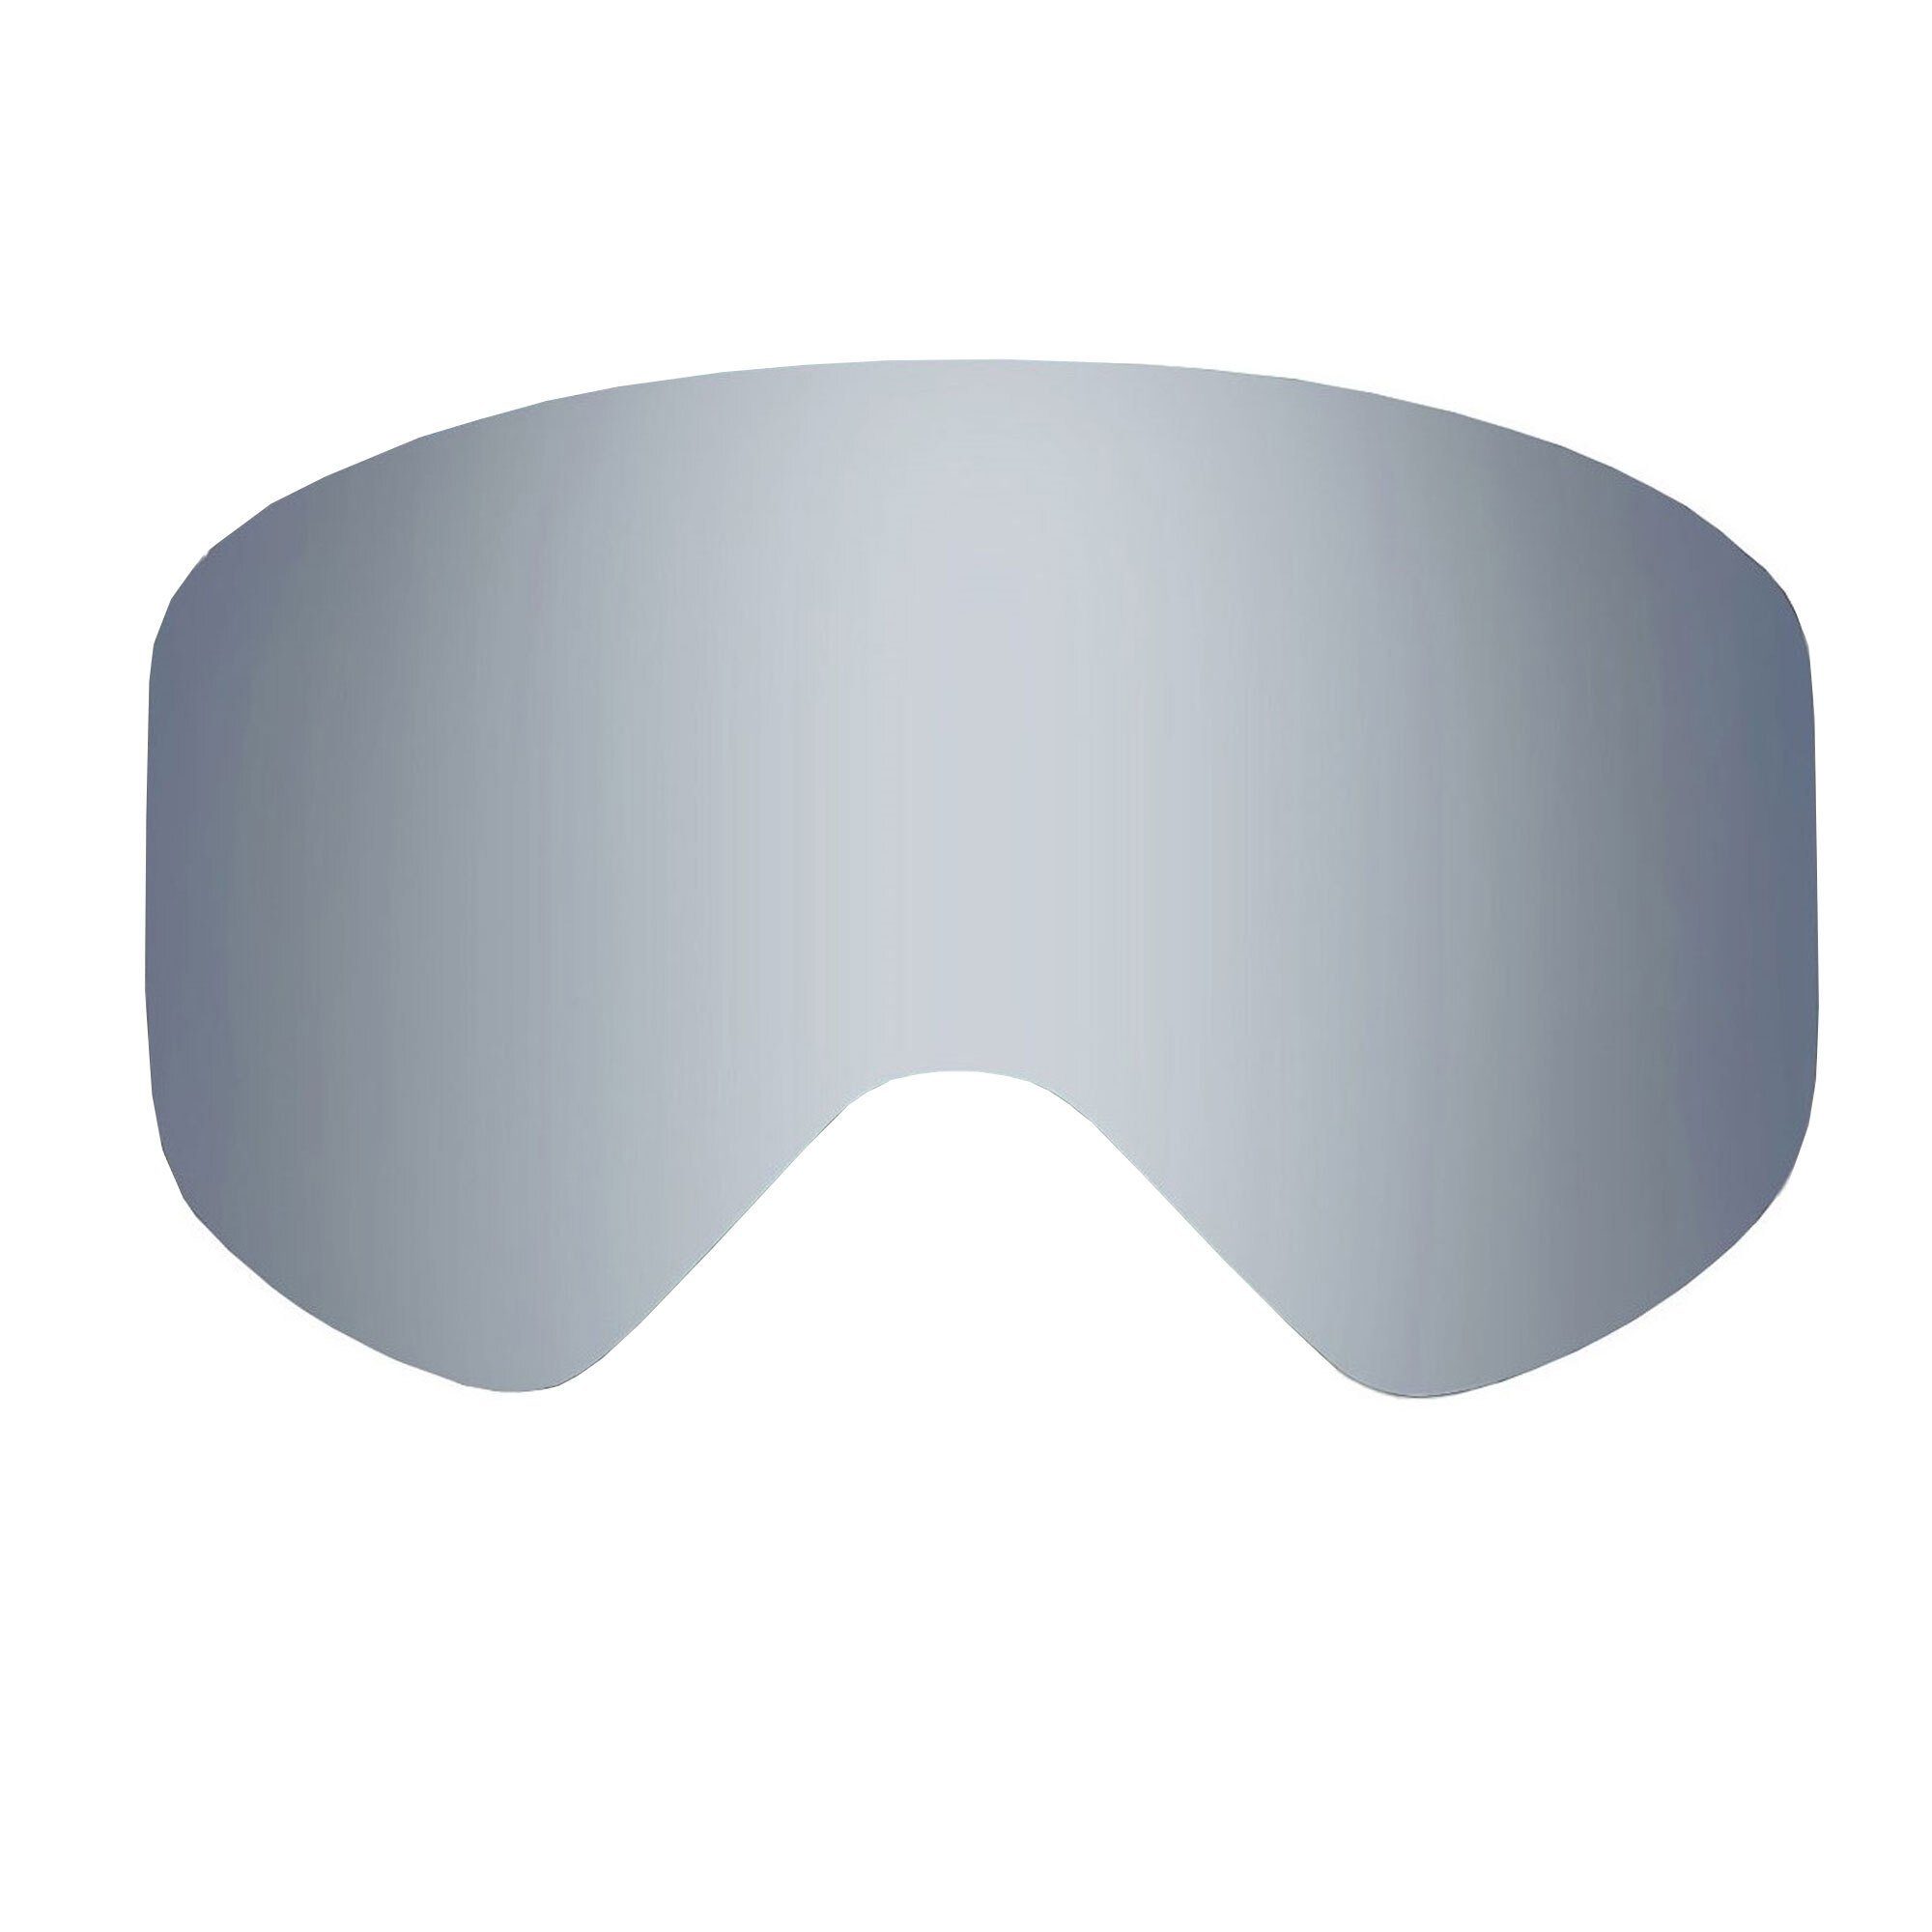 Skibrille silber YEAZ Wechselglas Magnetisches wechselglas, verspiegelt APEX magnetisches